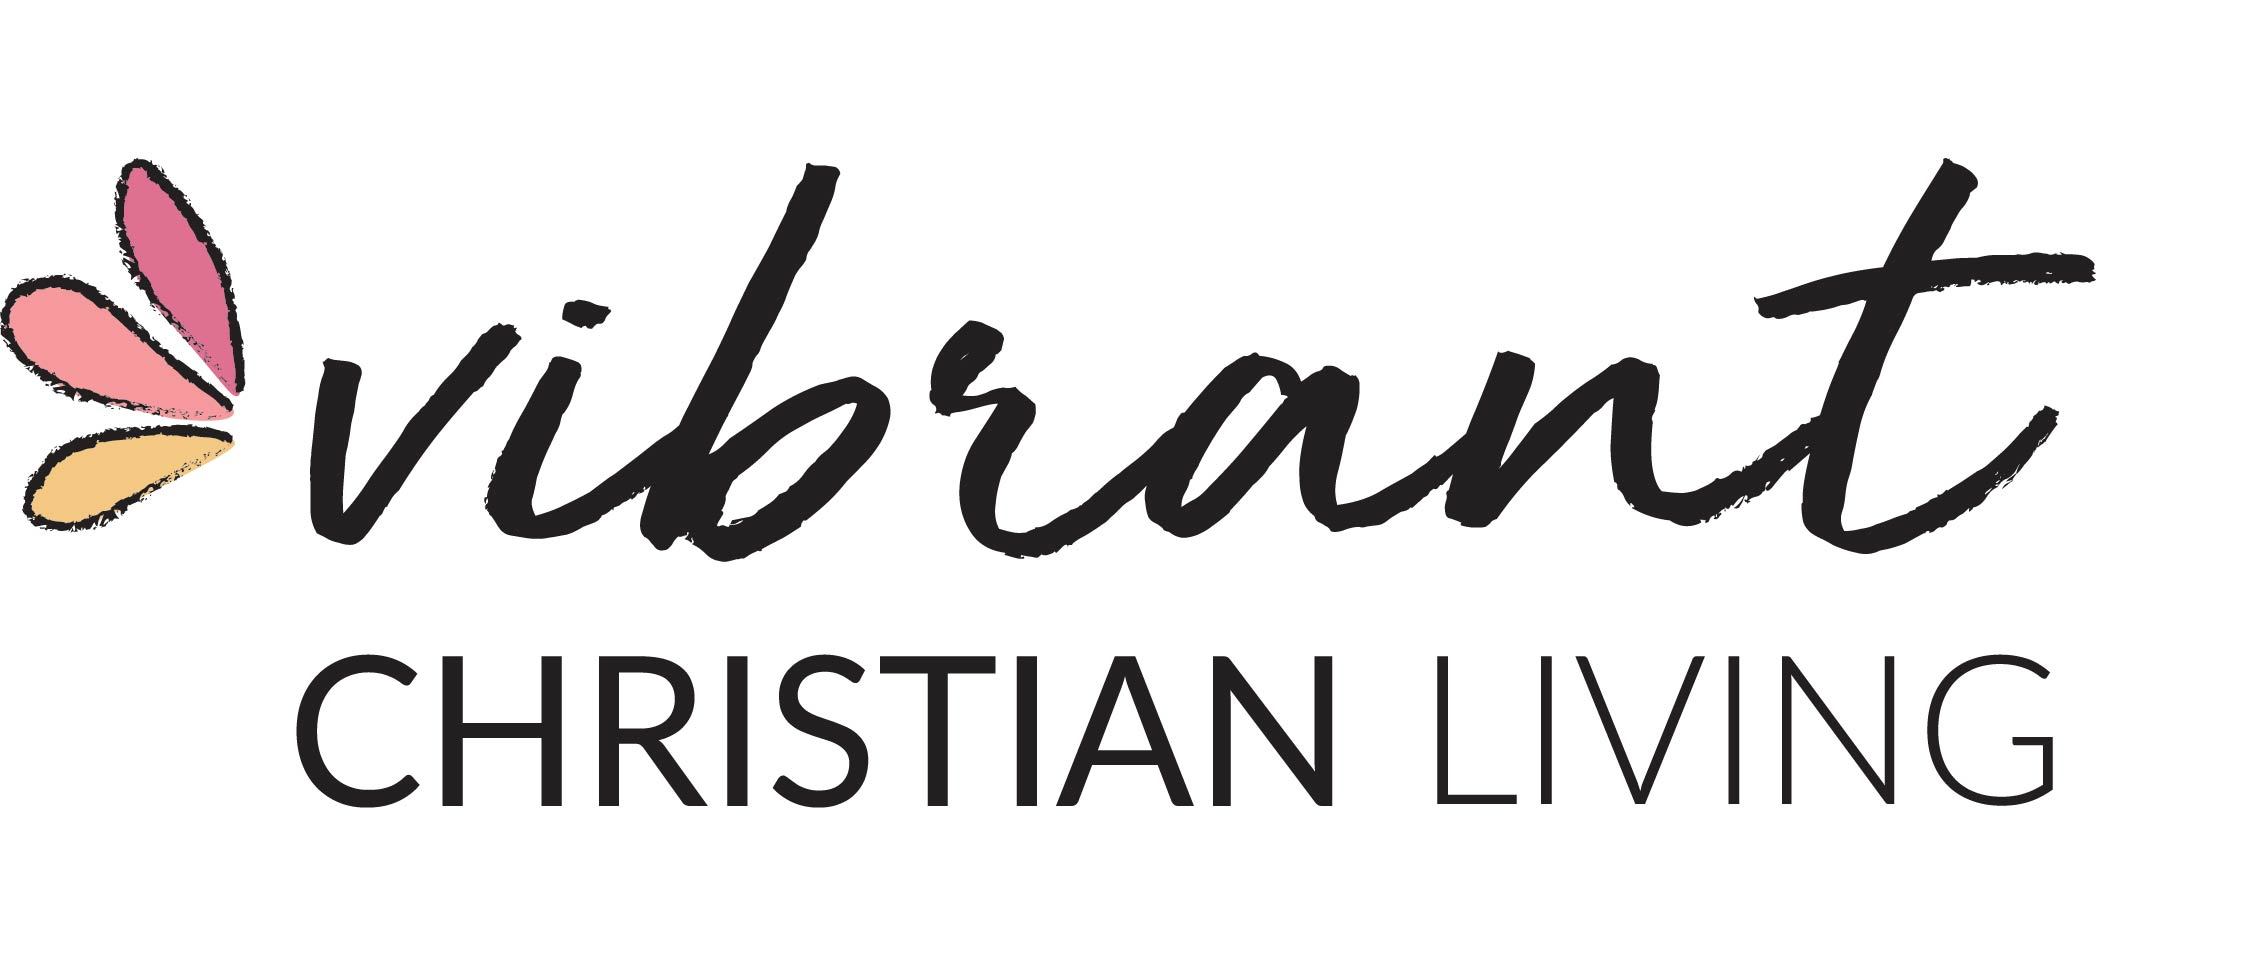 Vibrant Christian Living